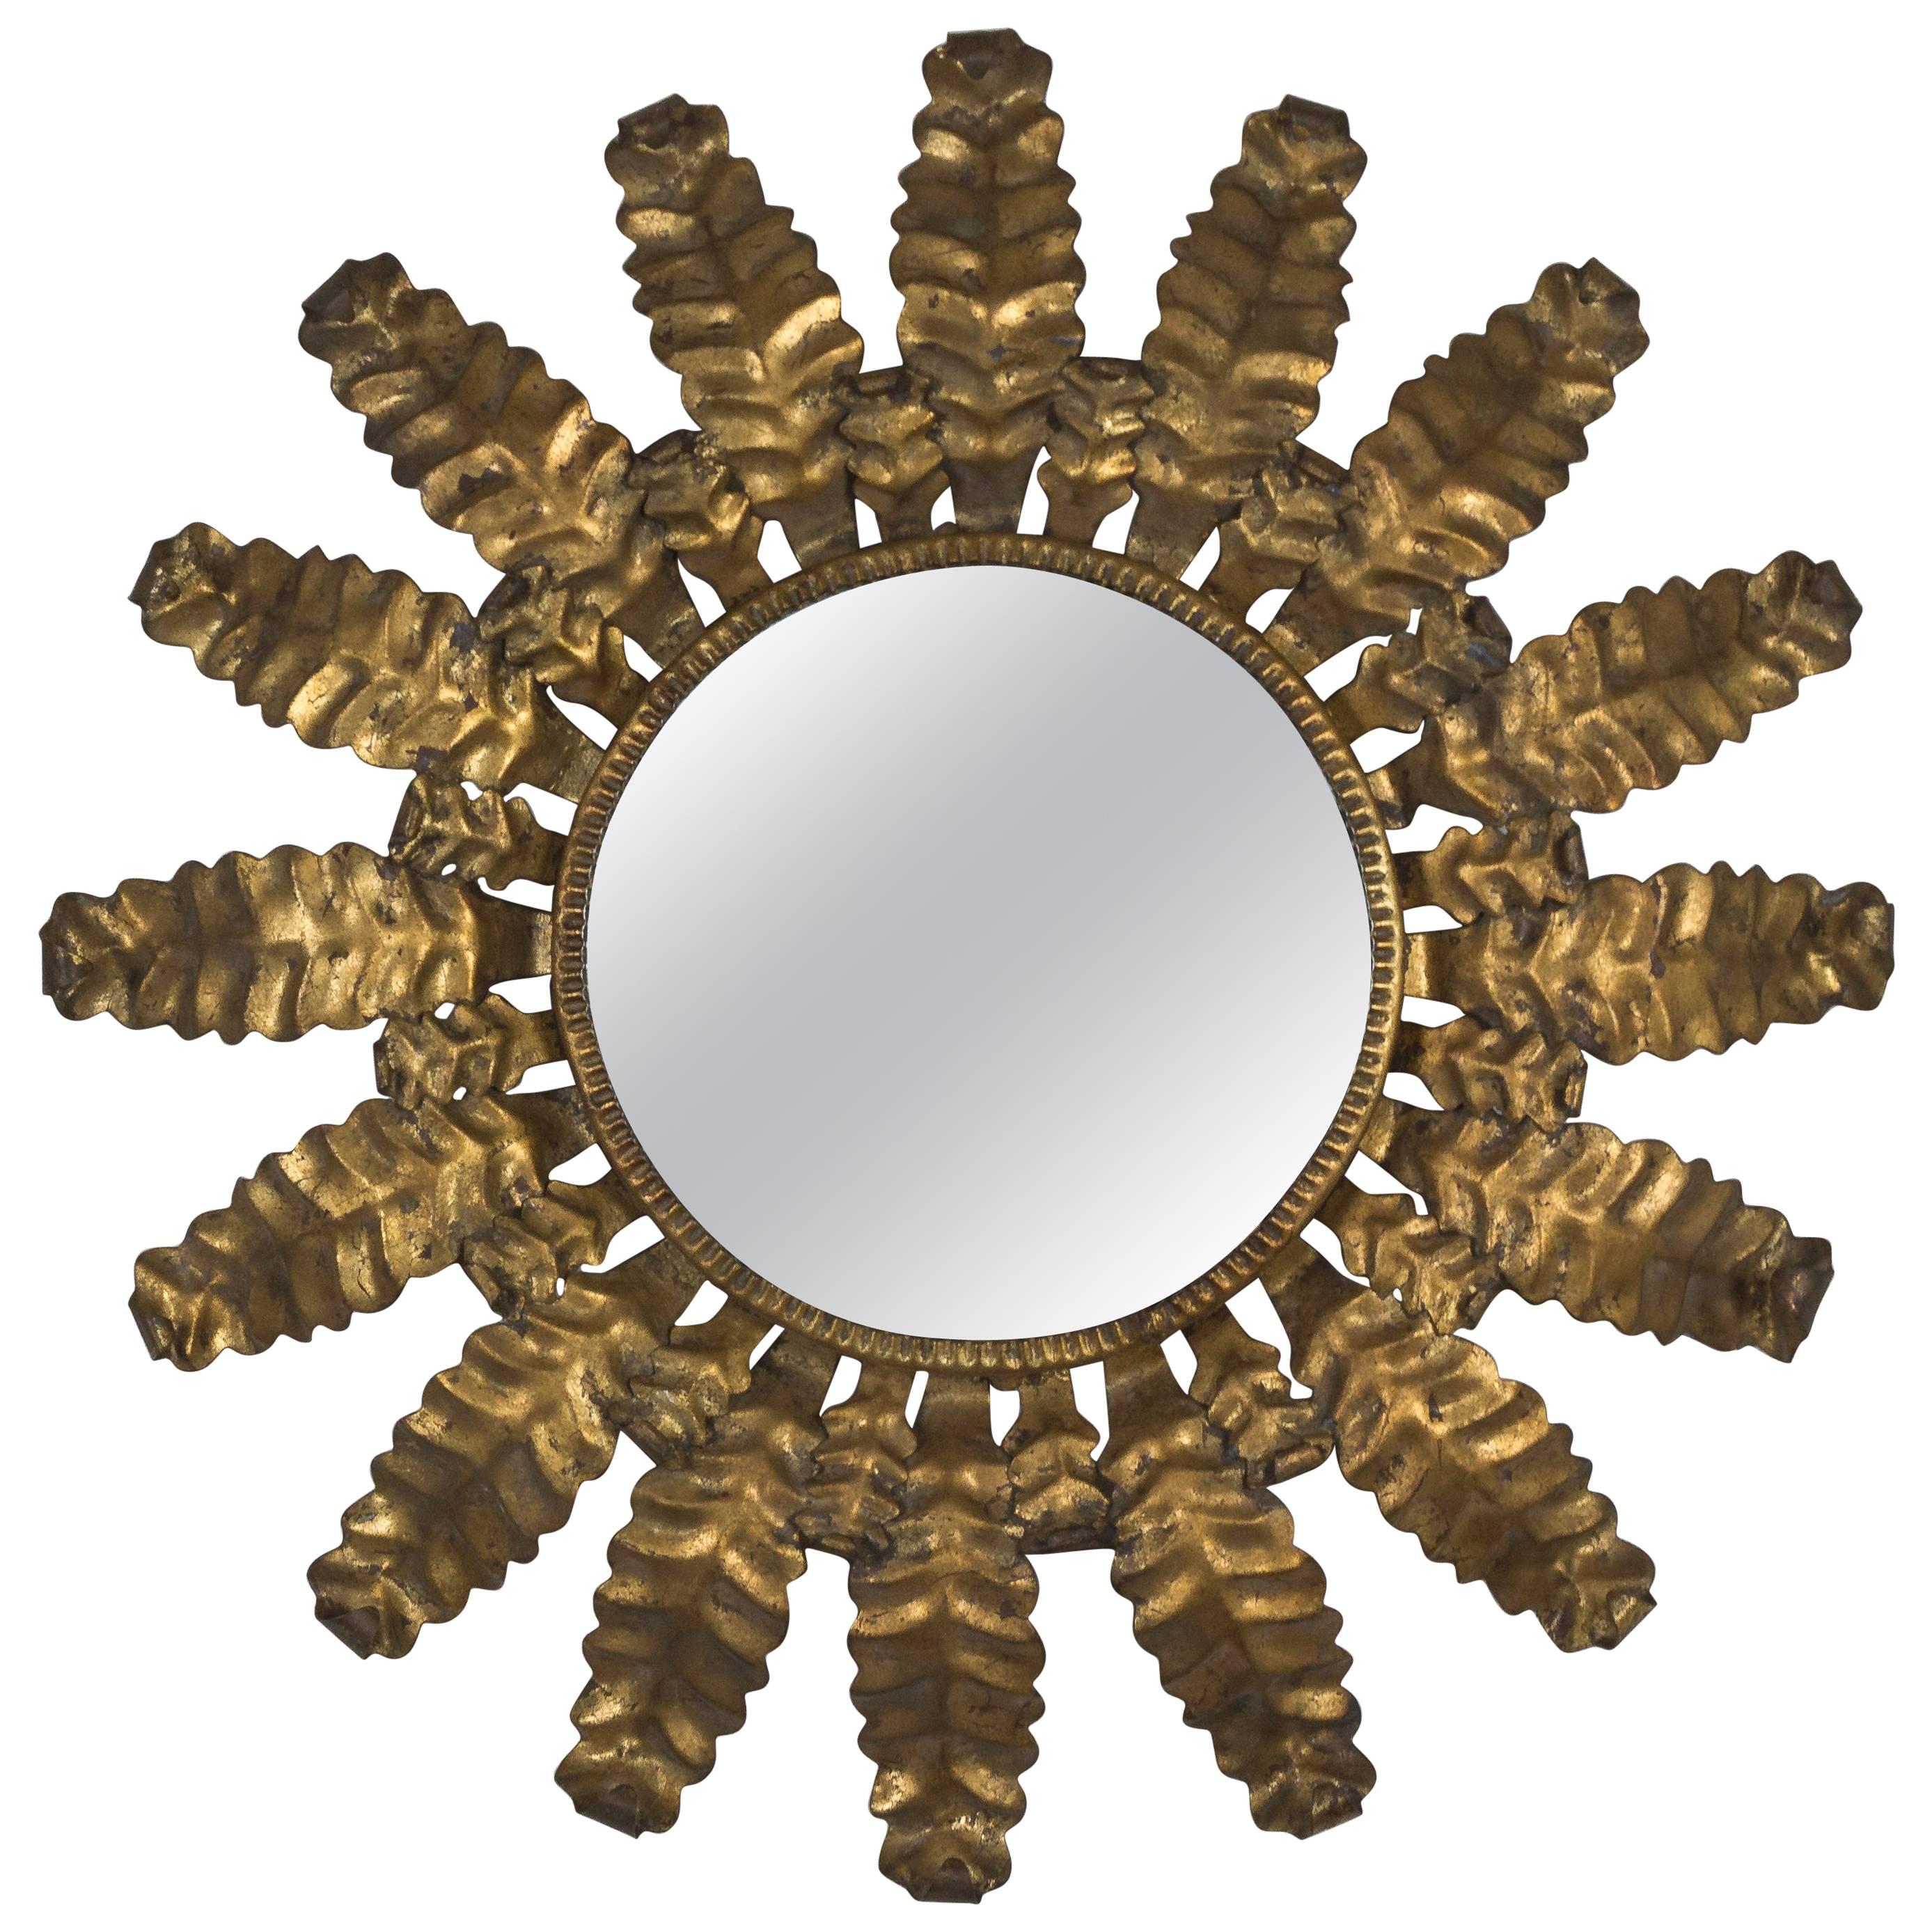 Unusual Round Gilt Metal Sunburst Mirror